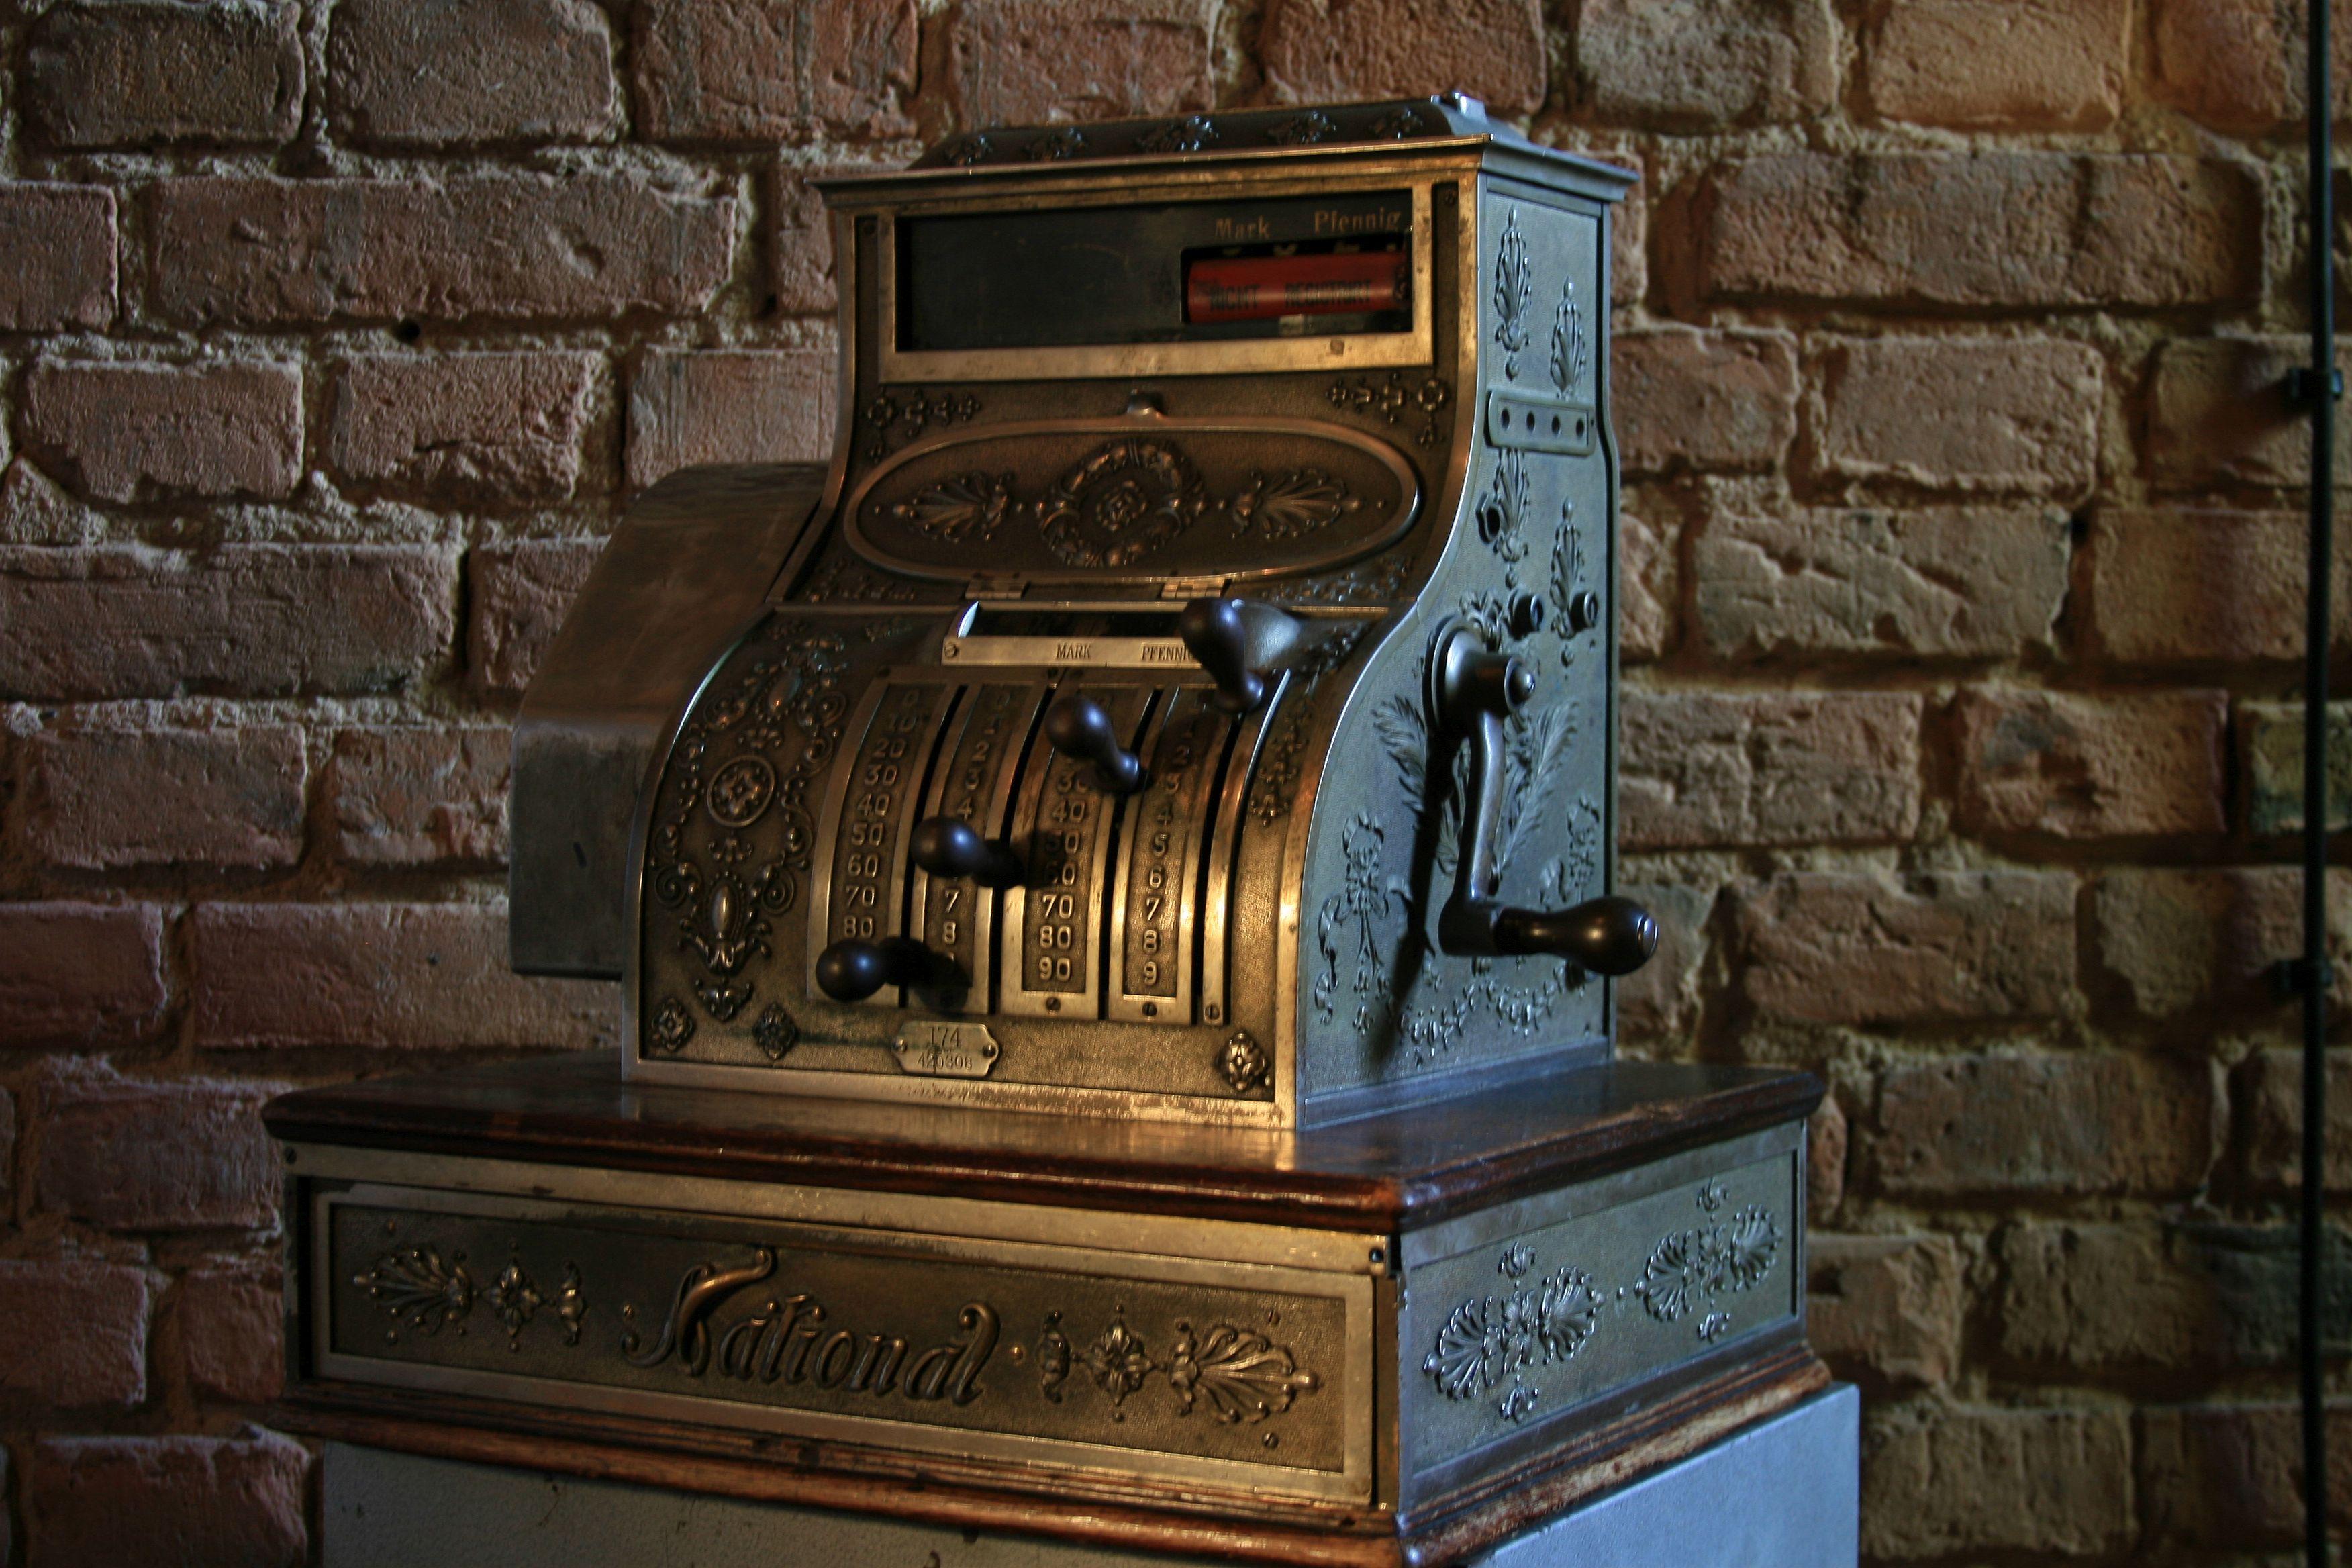 1930 national cash register